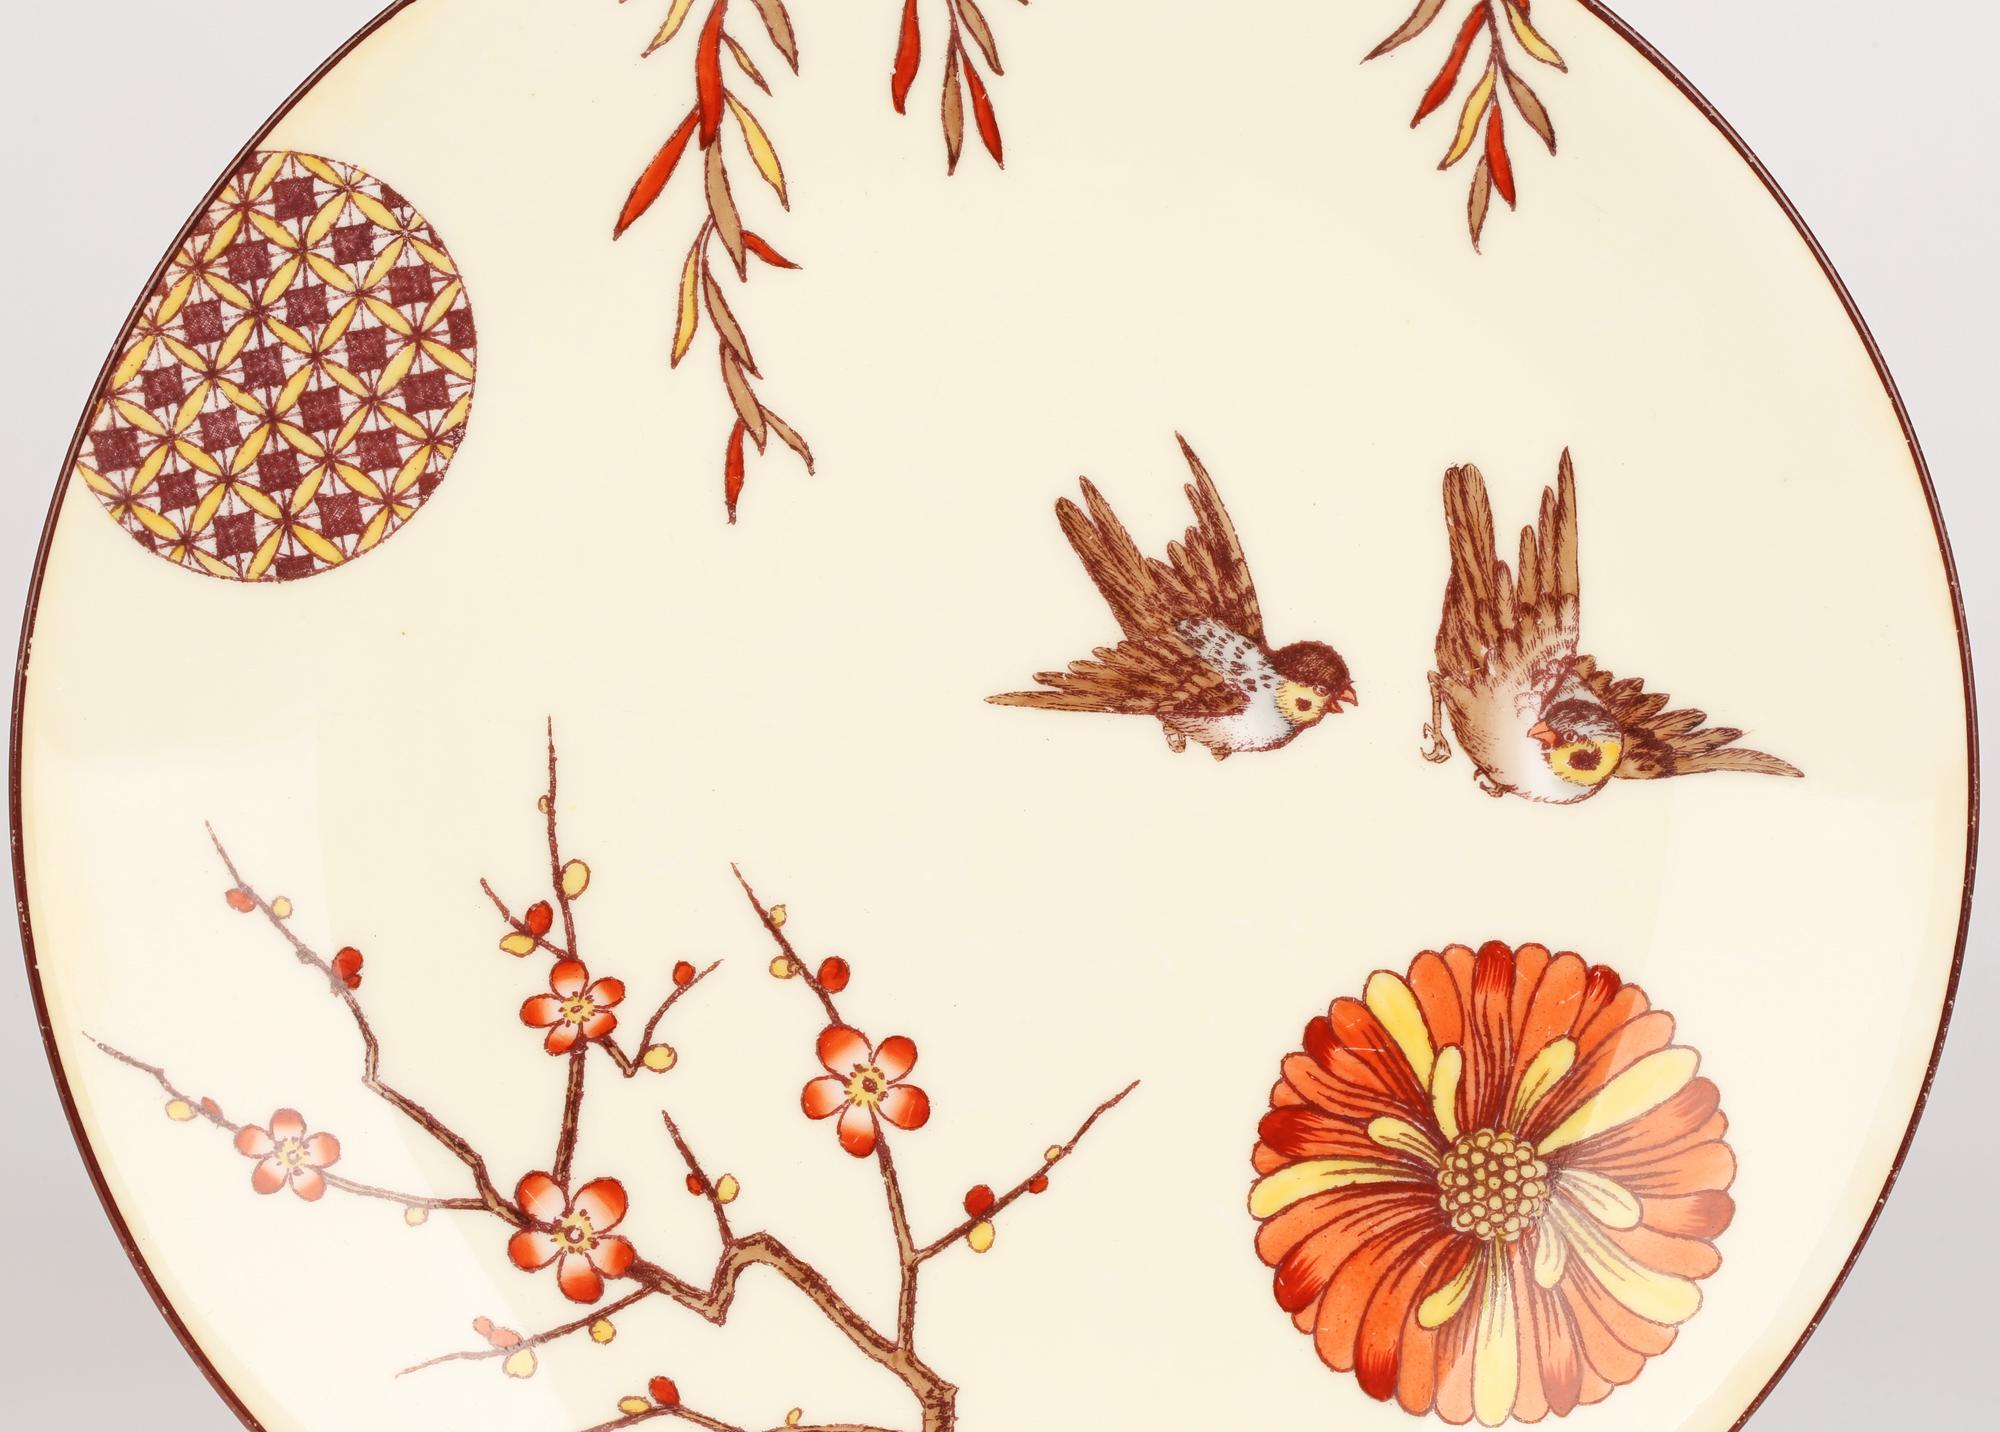 Eine hervorragende und stilvolle Aesthetic Movement Minton Porzellan Kabinett Teller mit Vögeln, blühenden Weißdorn und andere Entwürfe verziert Christopher Dresser (British, 1834-1904) von 1880 zugeschrieben. 

Christopher Dresser war ein